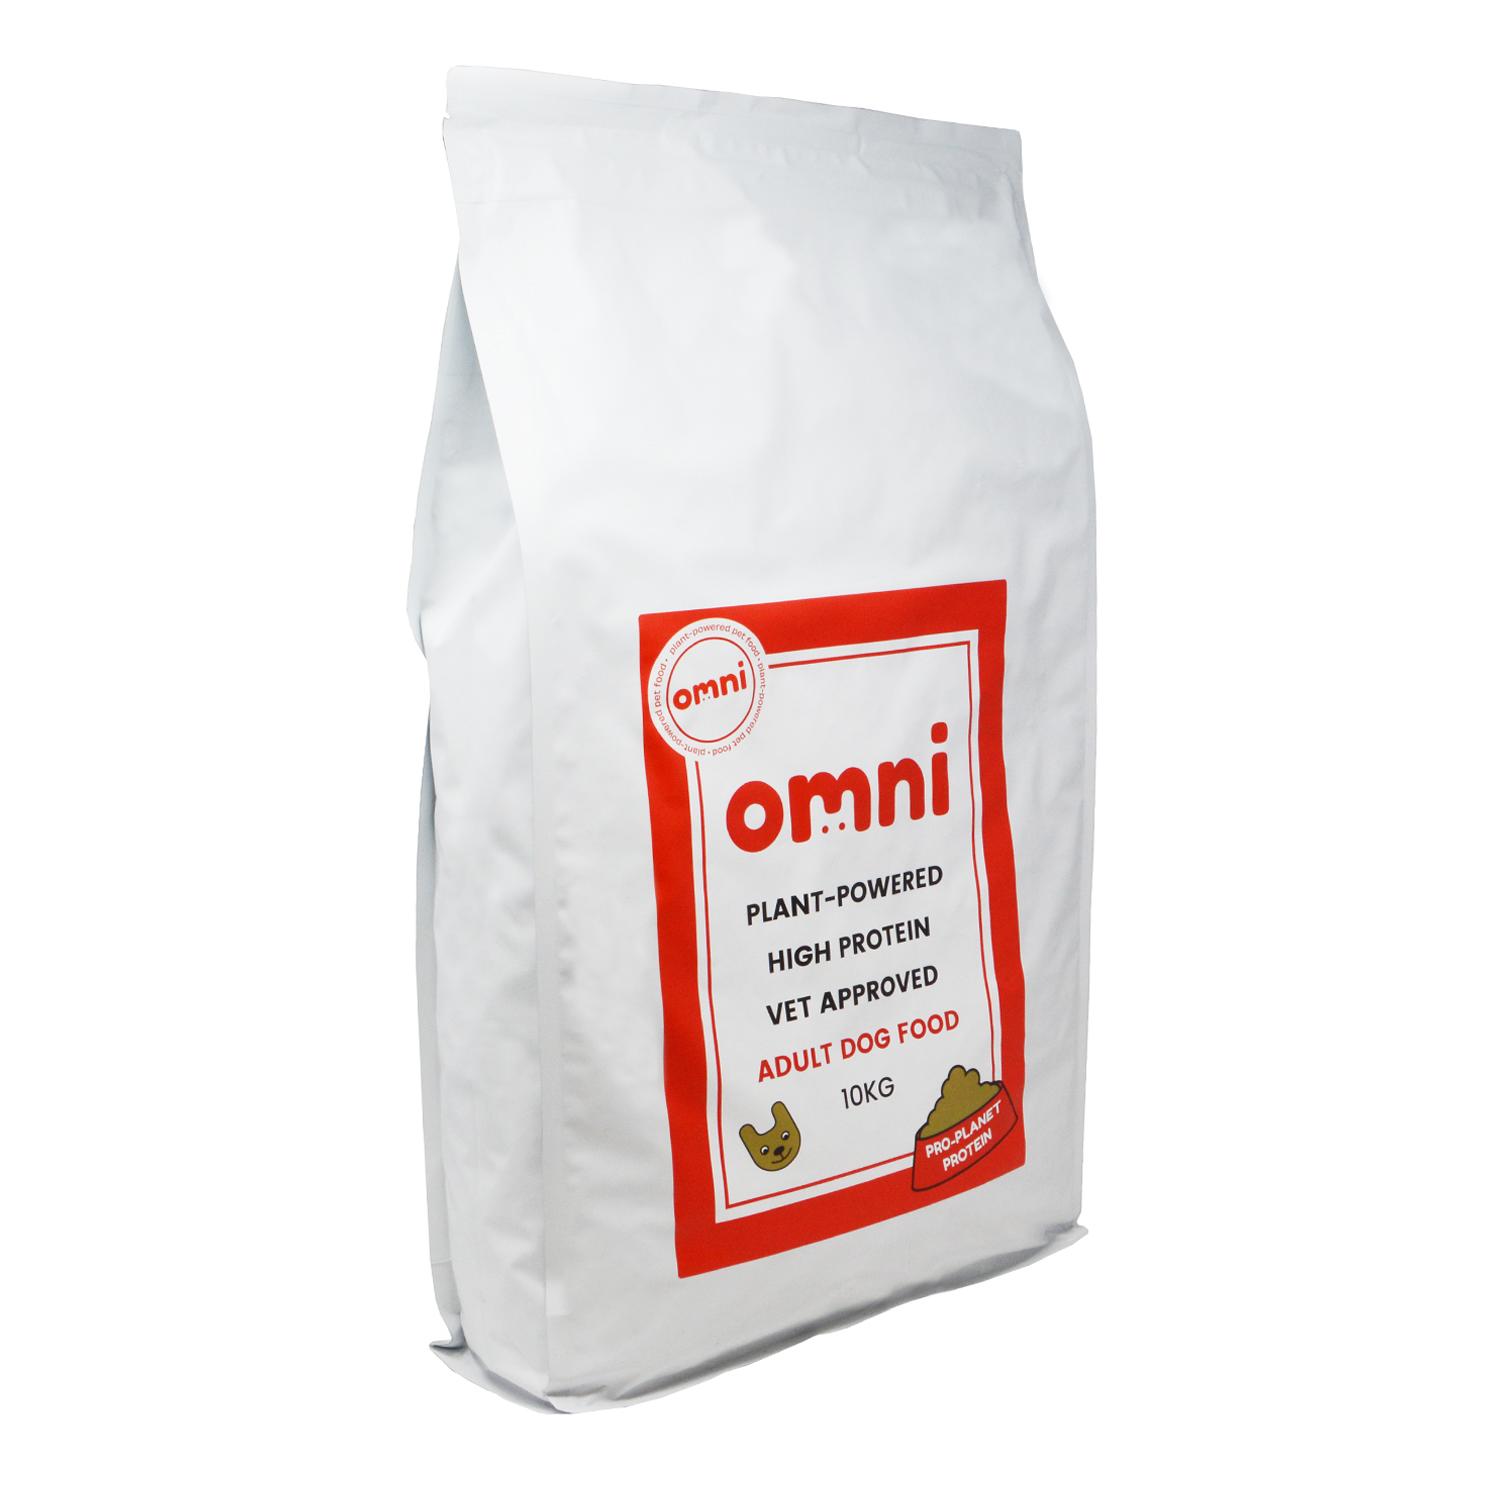 An angled 10kg bag of Omni vegan dog food